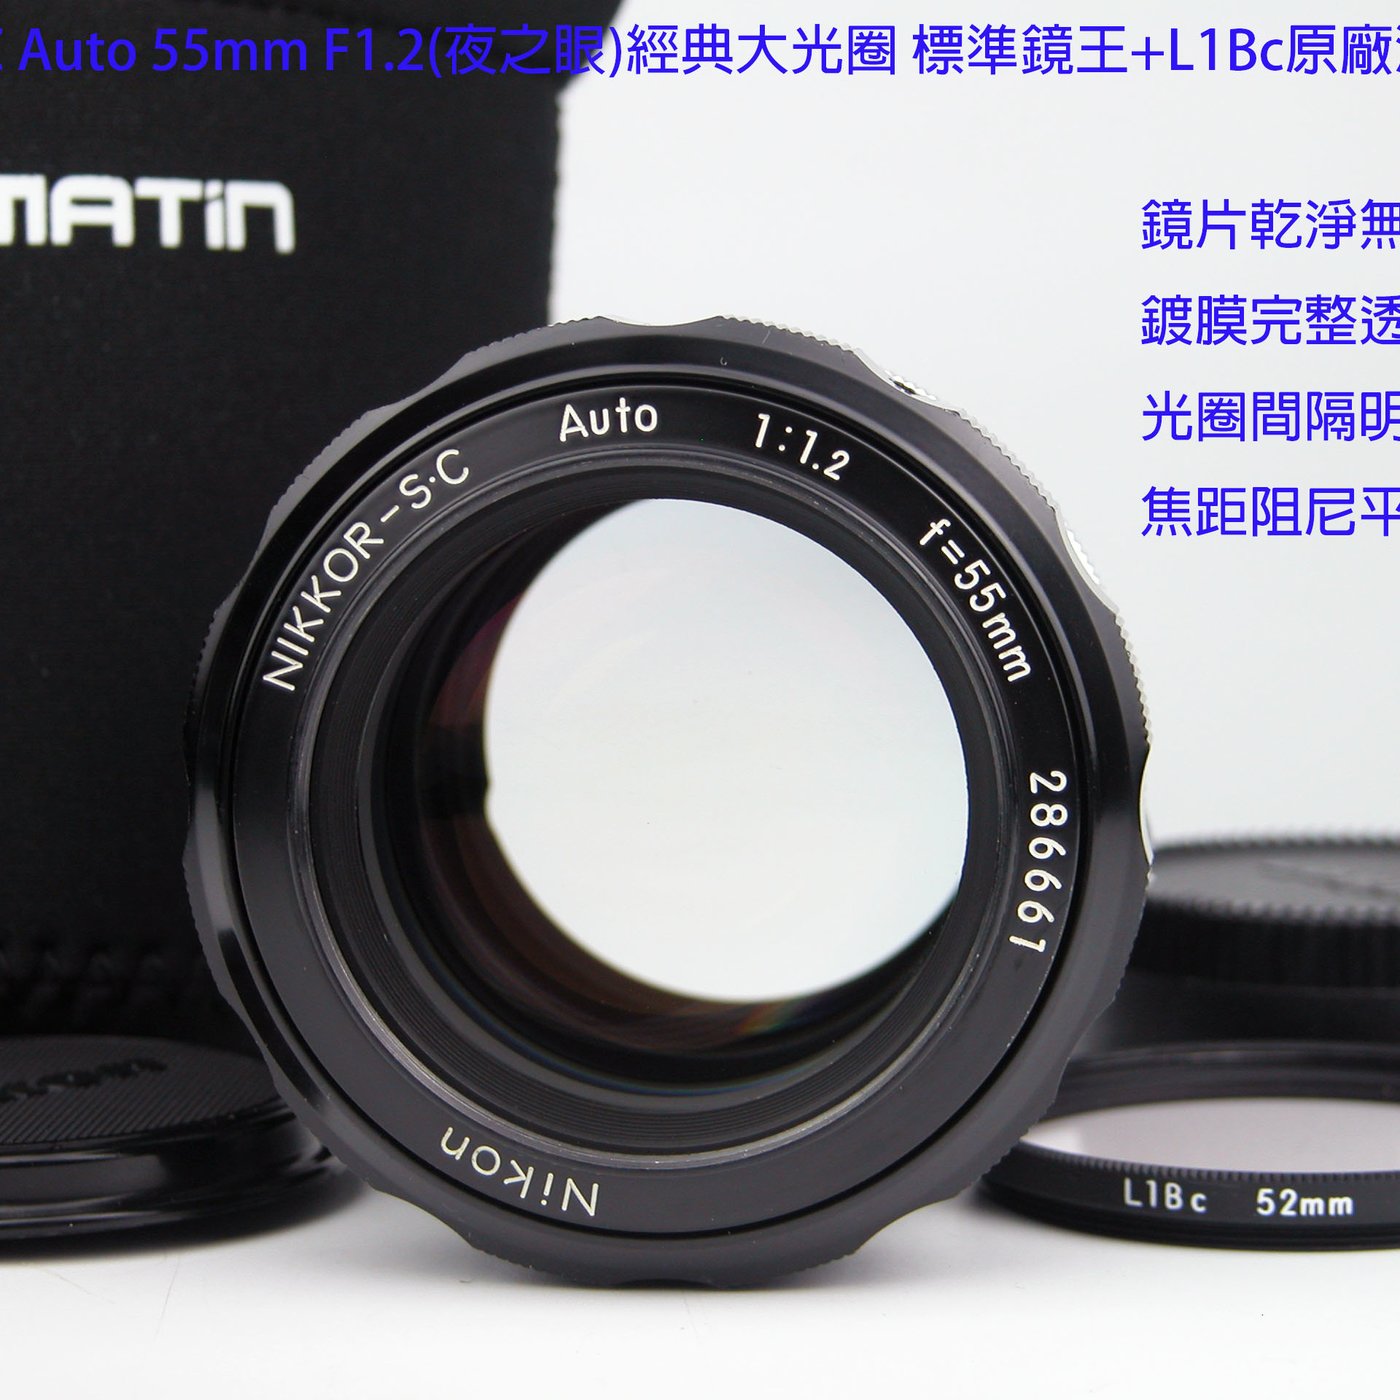 美品 Nikon ニコン NIKKOR-S.C Auto 55mm F1.2